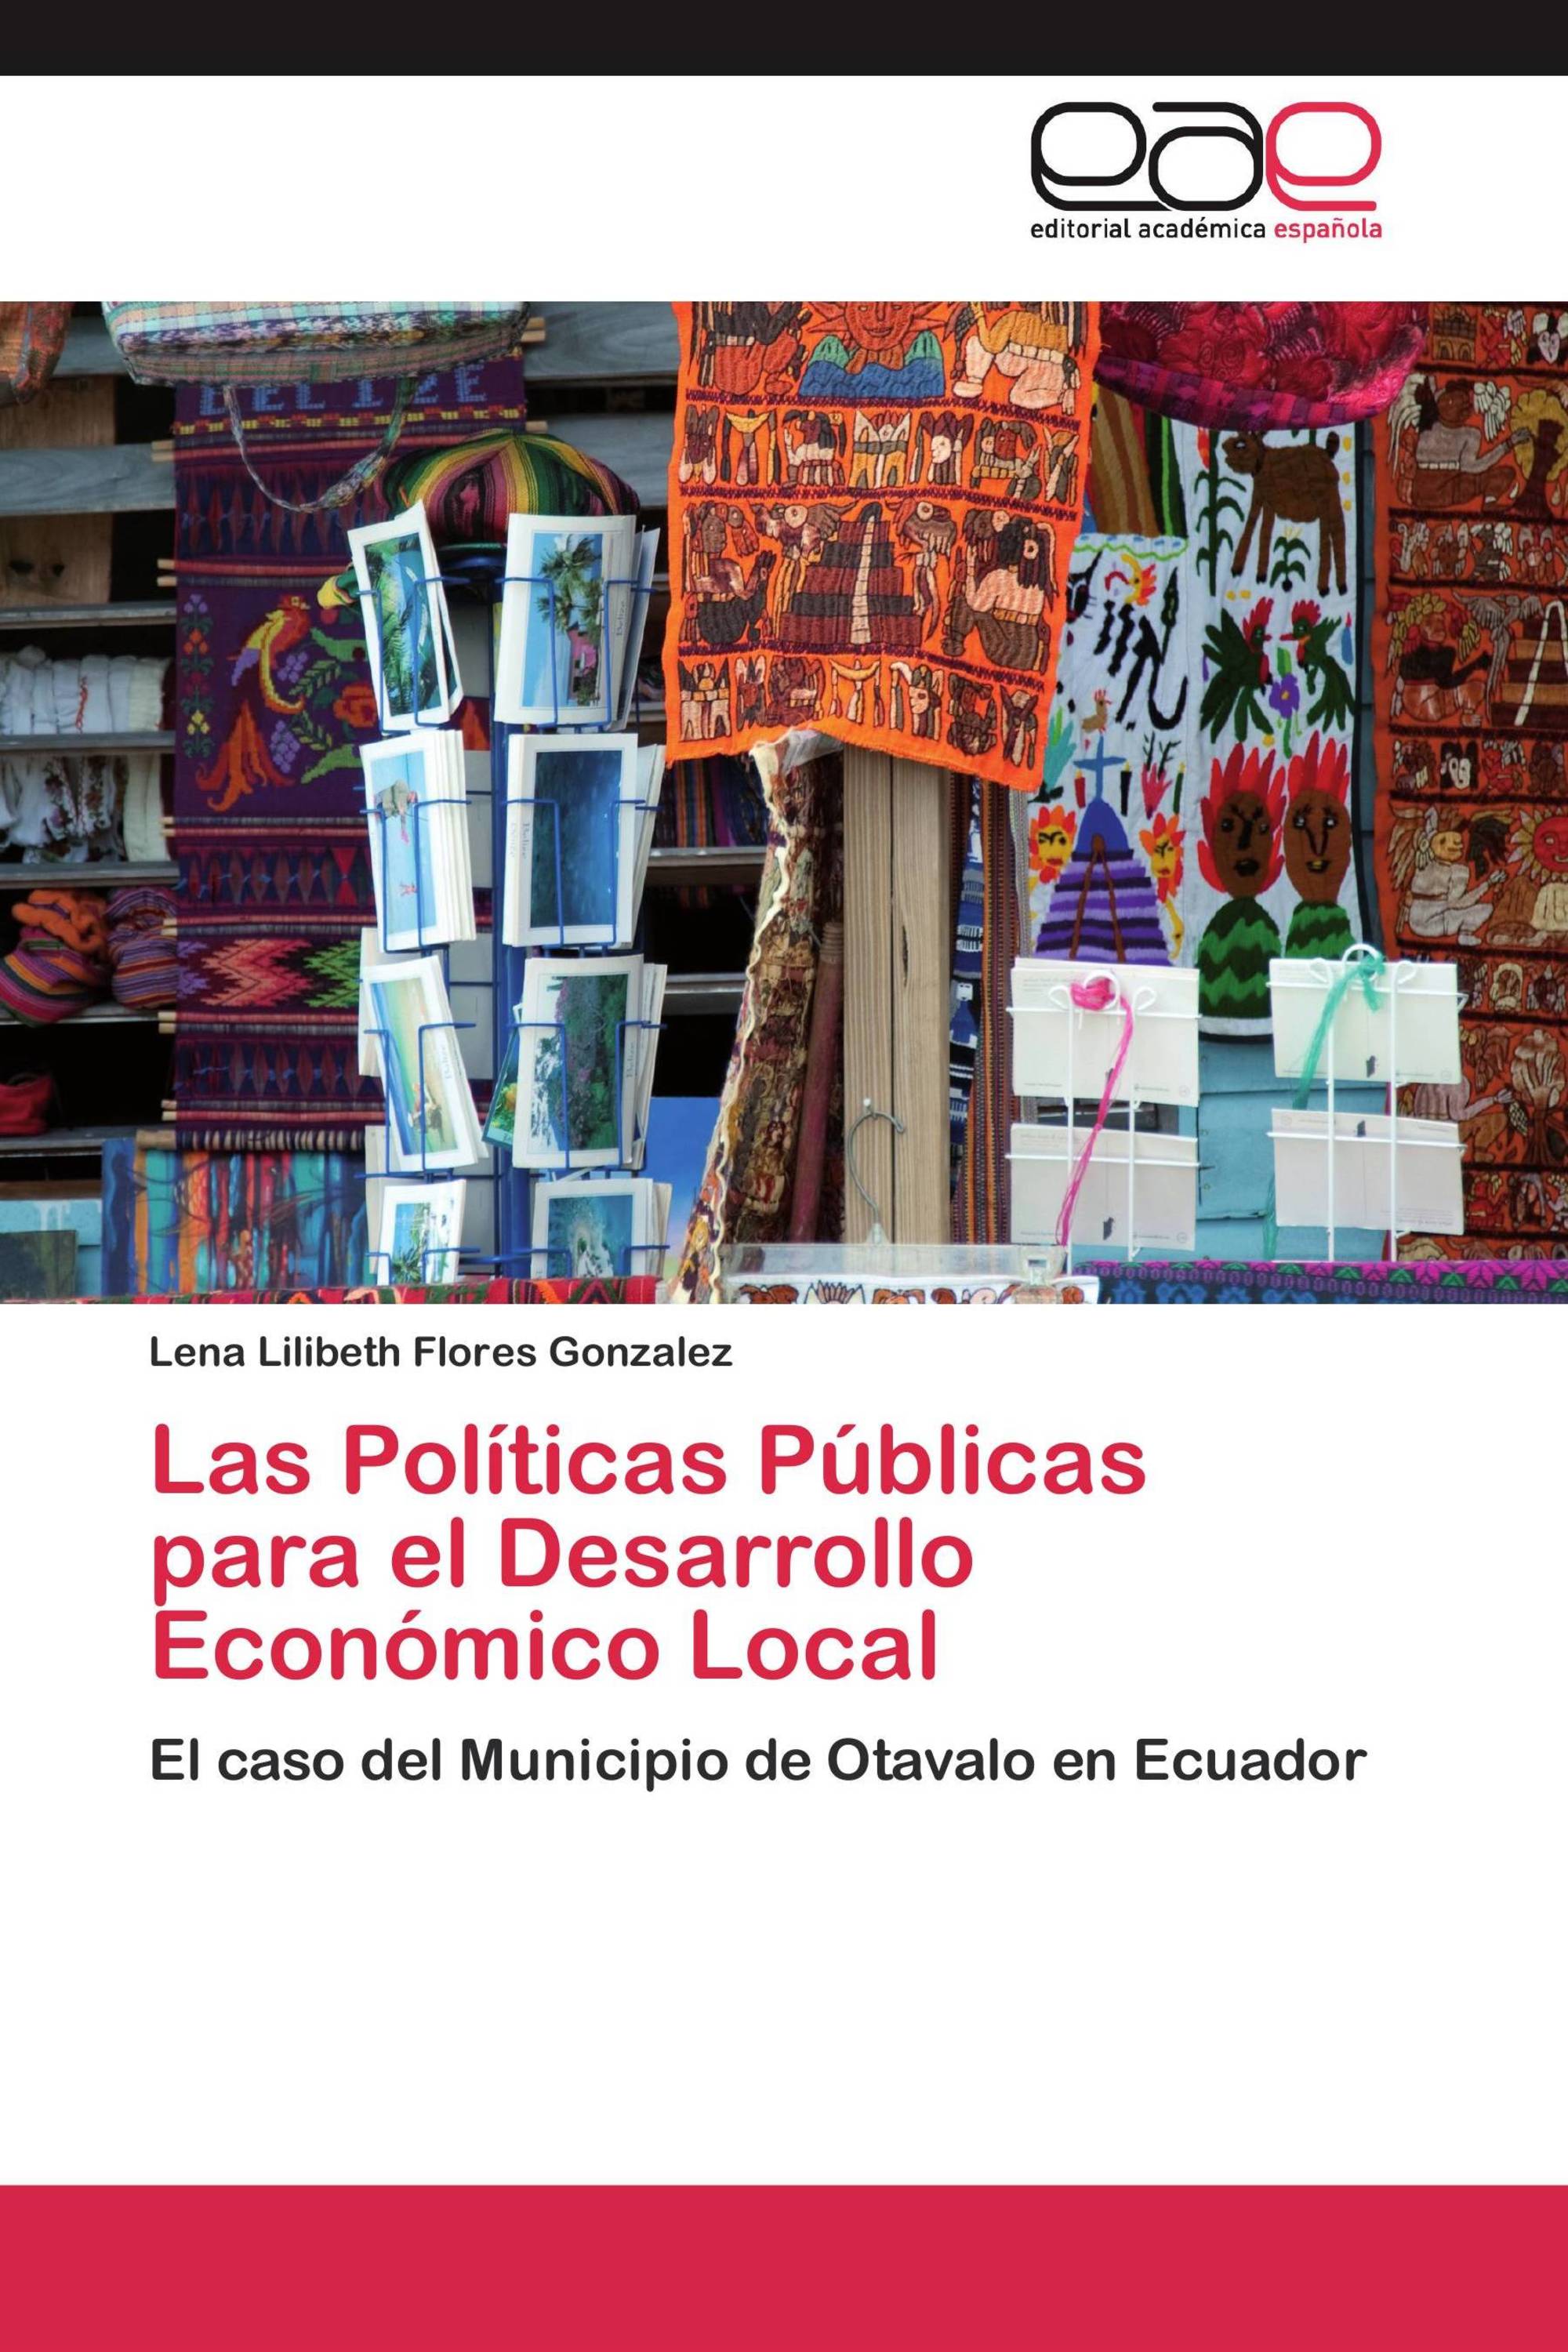 Las Políticas Públicas para el Desarrollo Económico Local